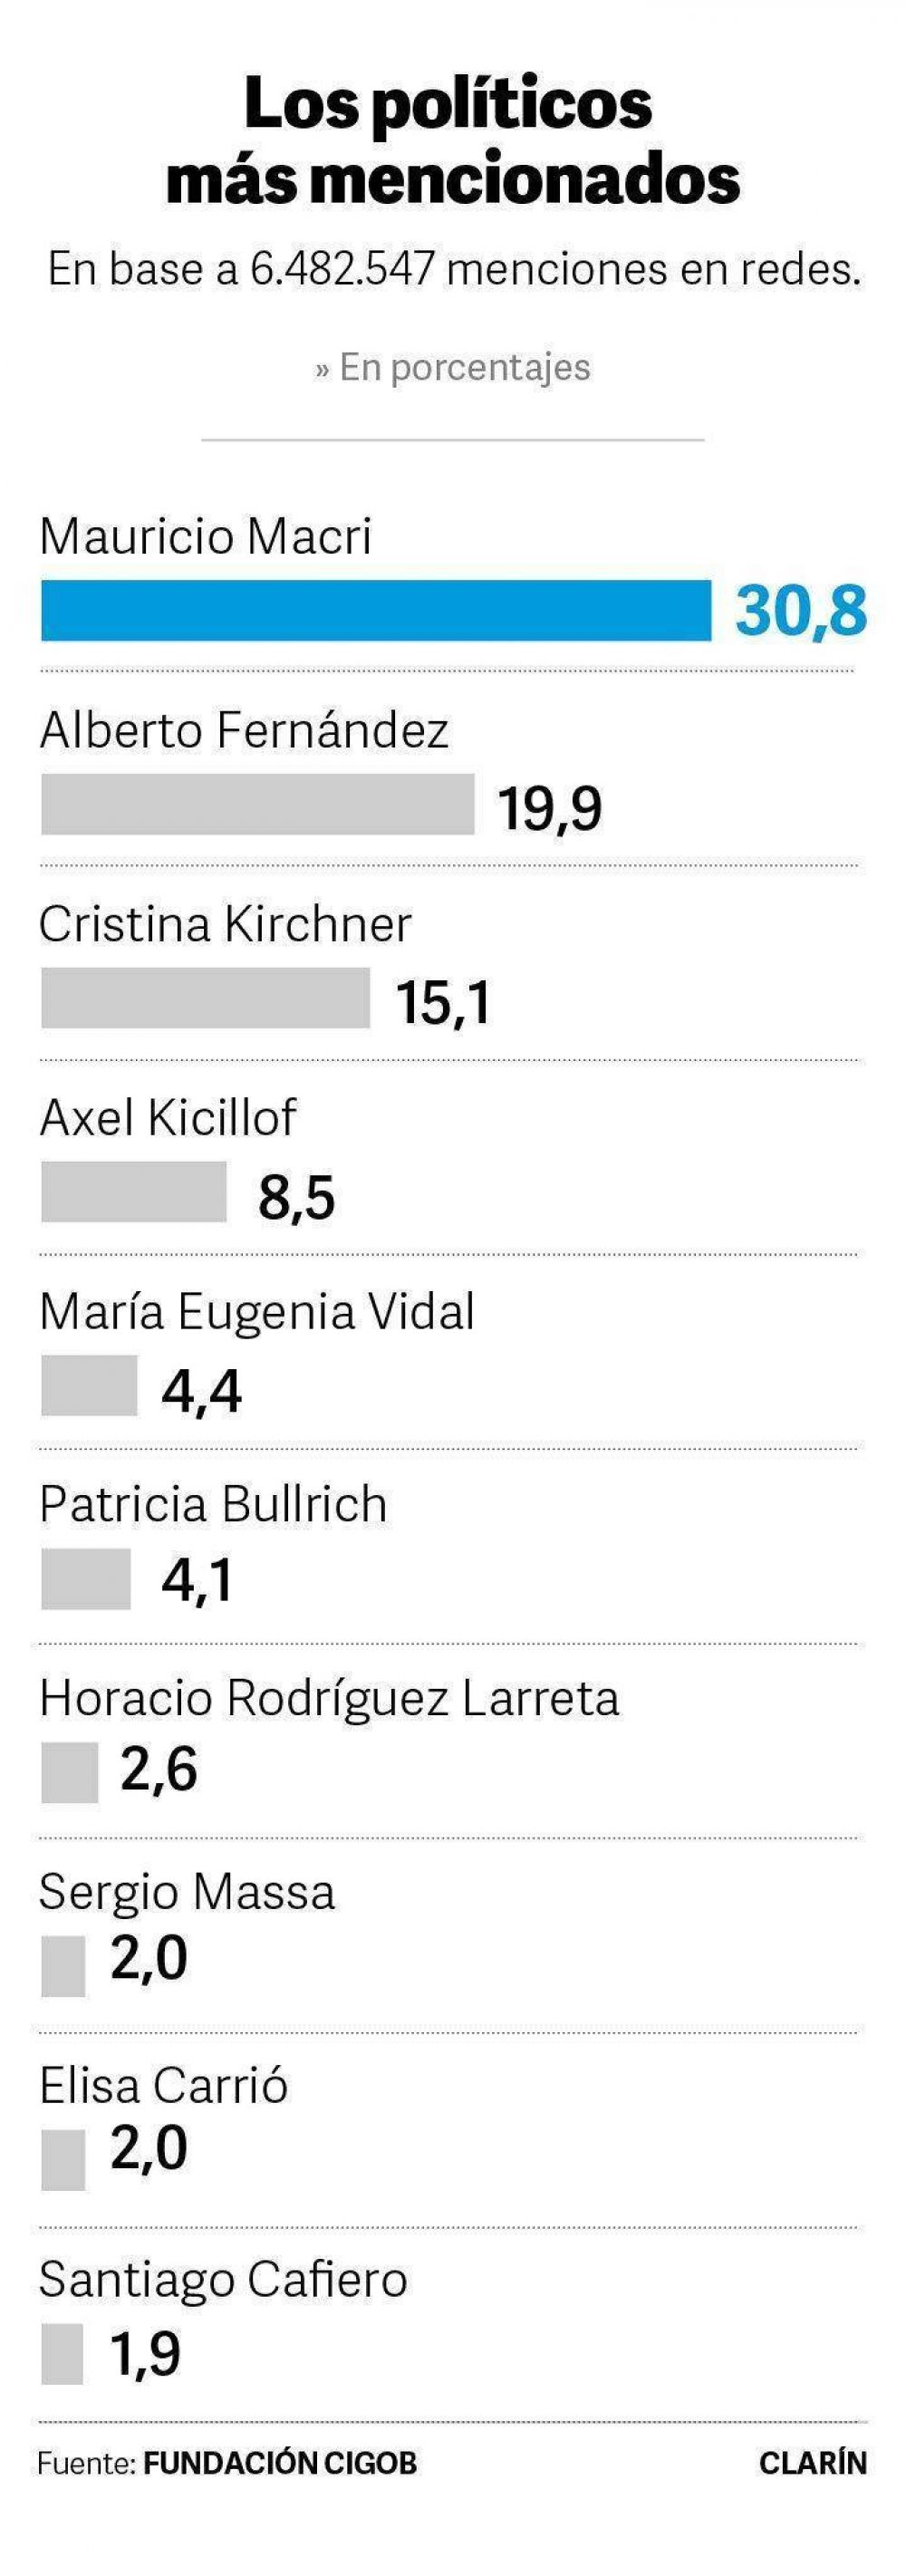 El ranking que lidera Mauricio Macri y se divide mitad y mitad con el kirchnerismo